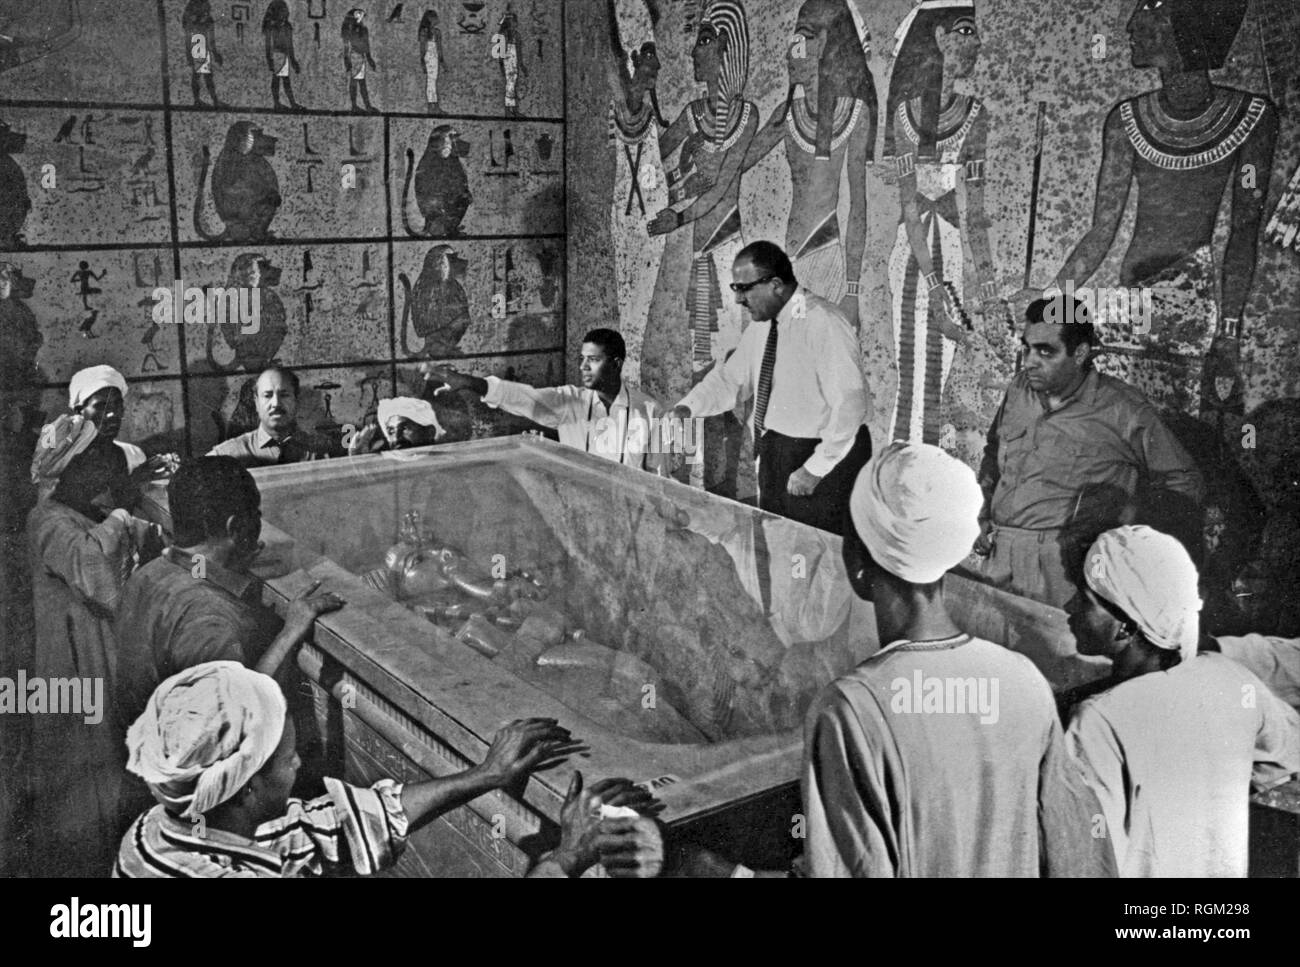 All'interno di Tutankhamon la tomba nel 1922 Egytian esperti all'interno della tomba di Tutankhamon che era stato scoperto da Howard Carter. Scansionata da materiale di immagine negli archivi della stampa Ritratto - Servizio (ex premere ritratto Bureau). Foto Stock